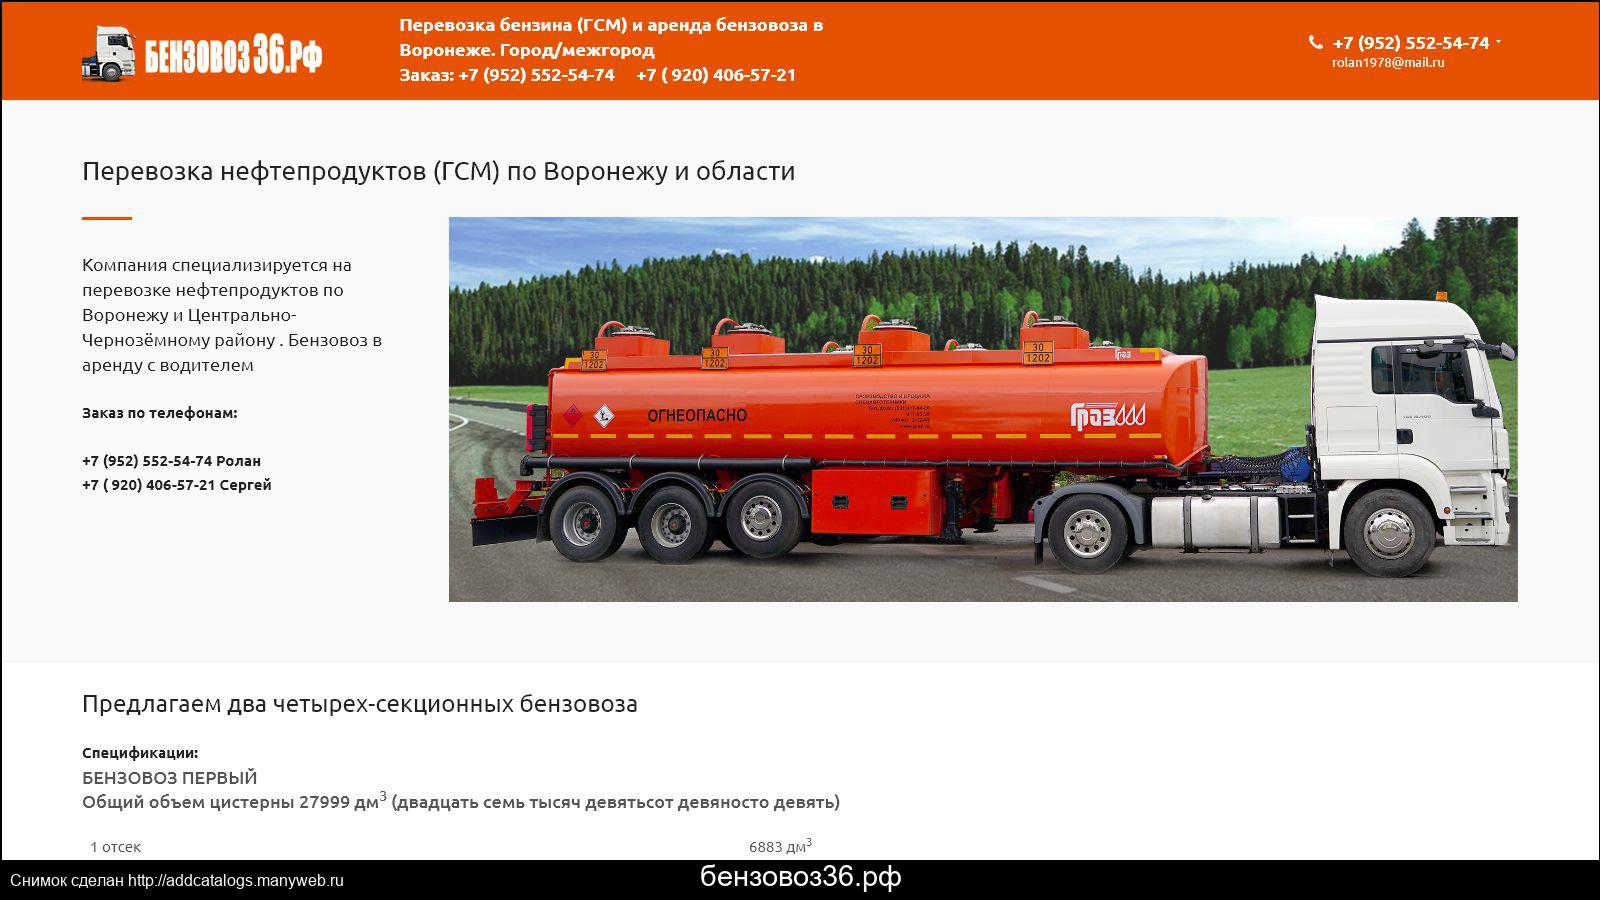 Надежный перевозчик нефтепродуктов по России